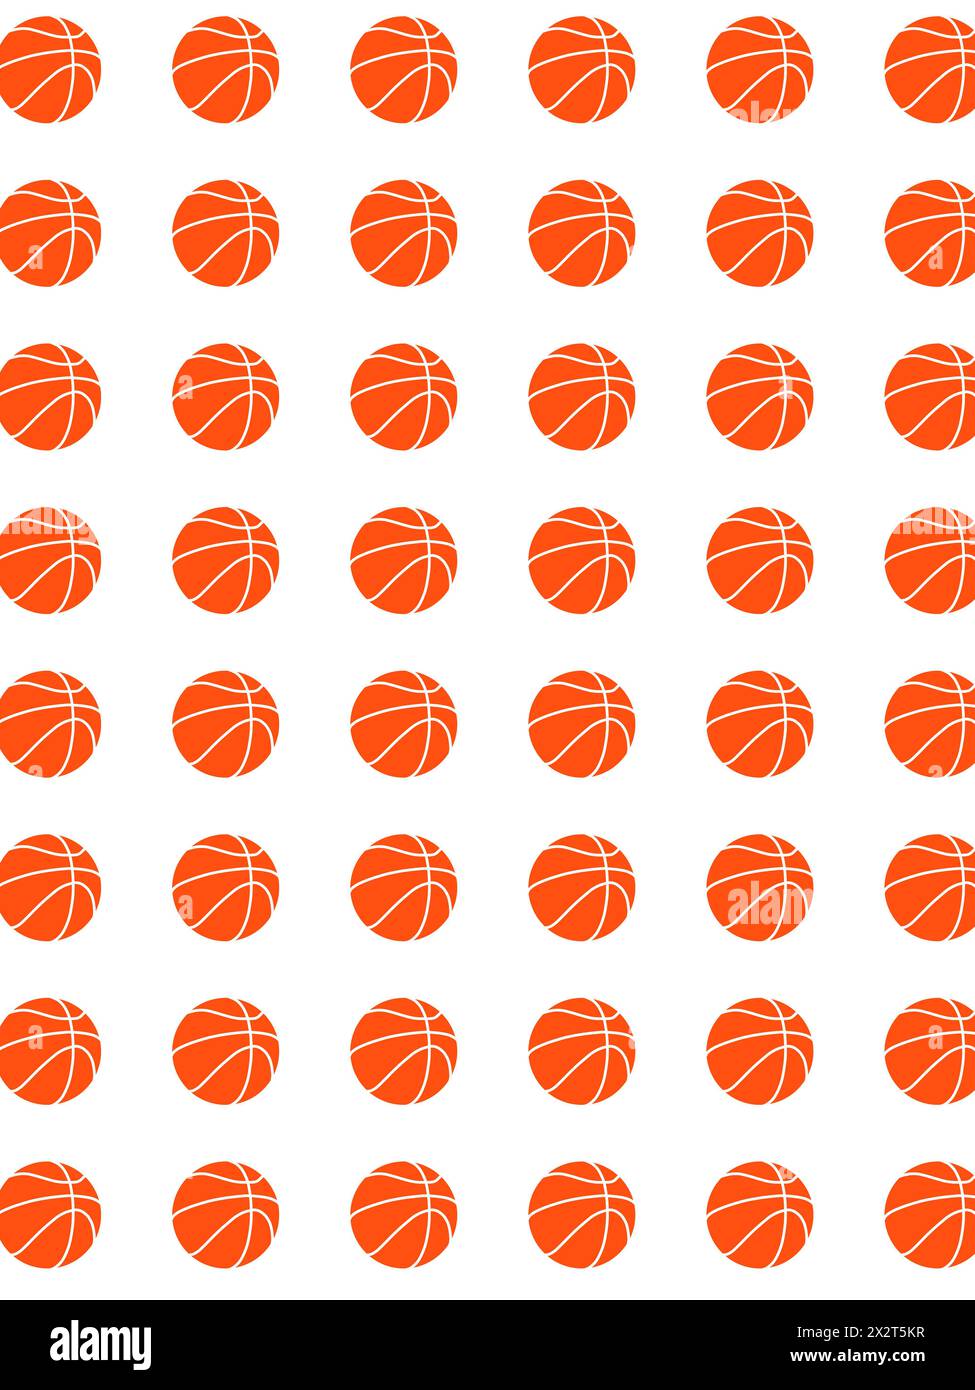 Muster orangener Basketbälle vor weißem Hintergrund Stockfoto